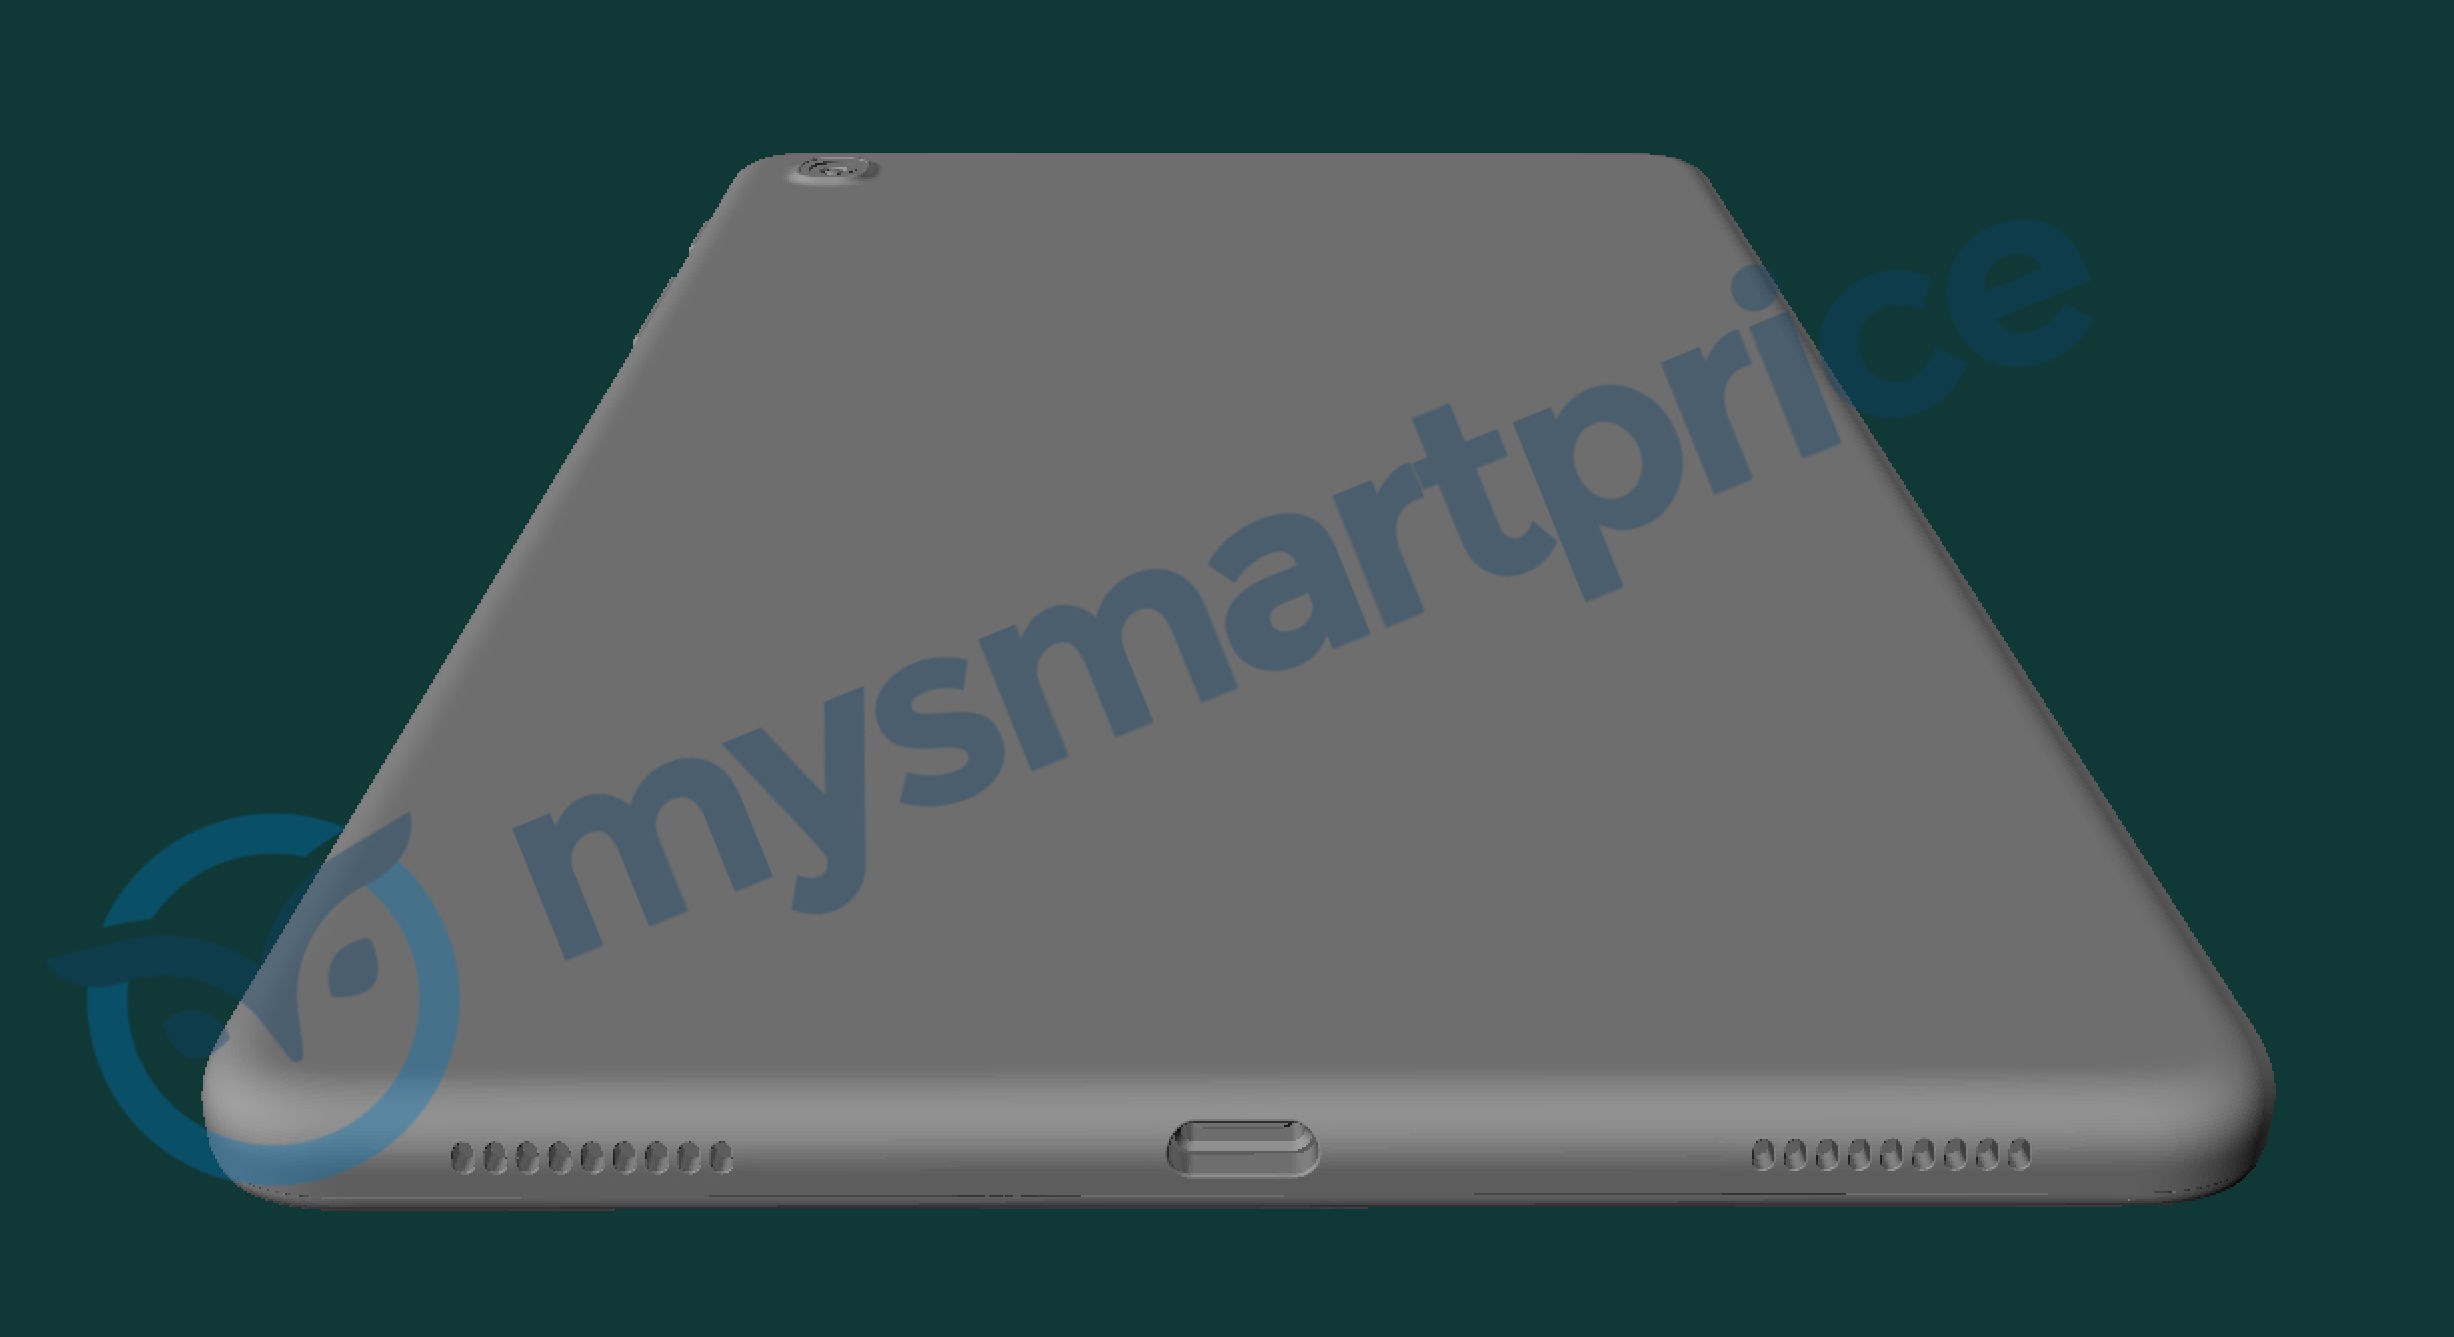 Samsung'un yeni Galaxy Tab A serisi tabletinin tasarımı sızdırıldı